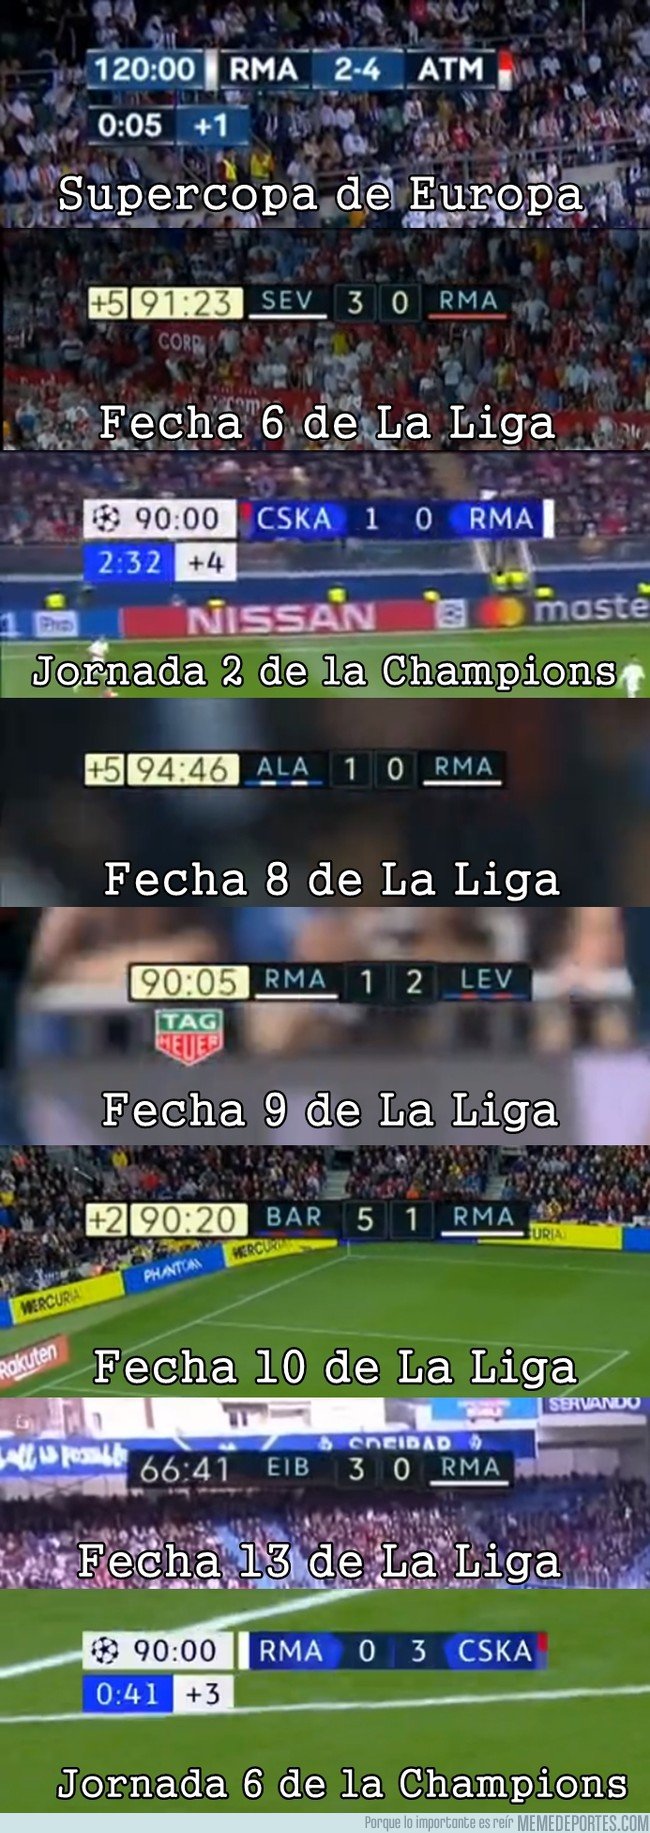 1058978 - Todas las derrotas del Madrid esta temporada. No convence ni desde el inicio